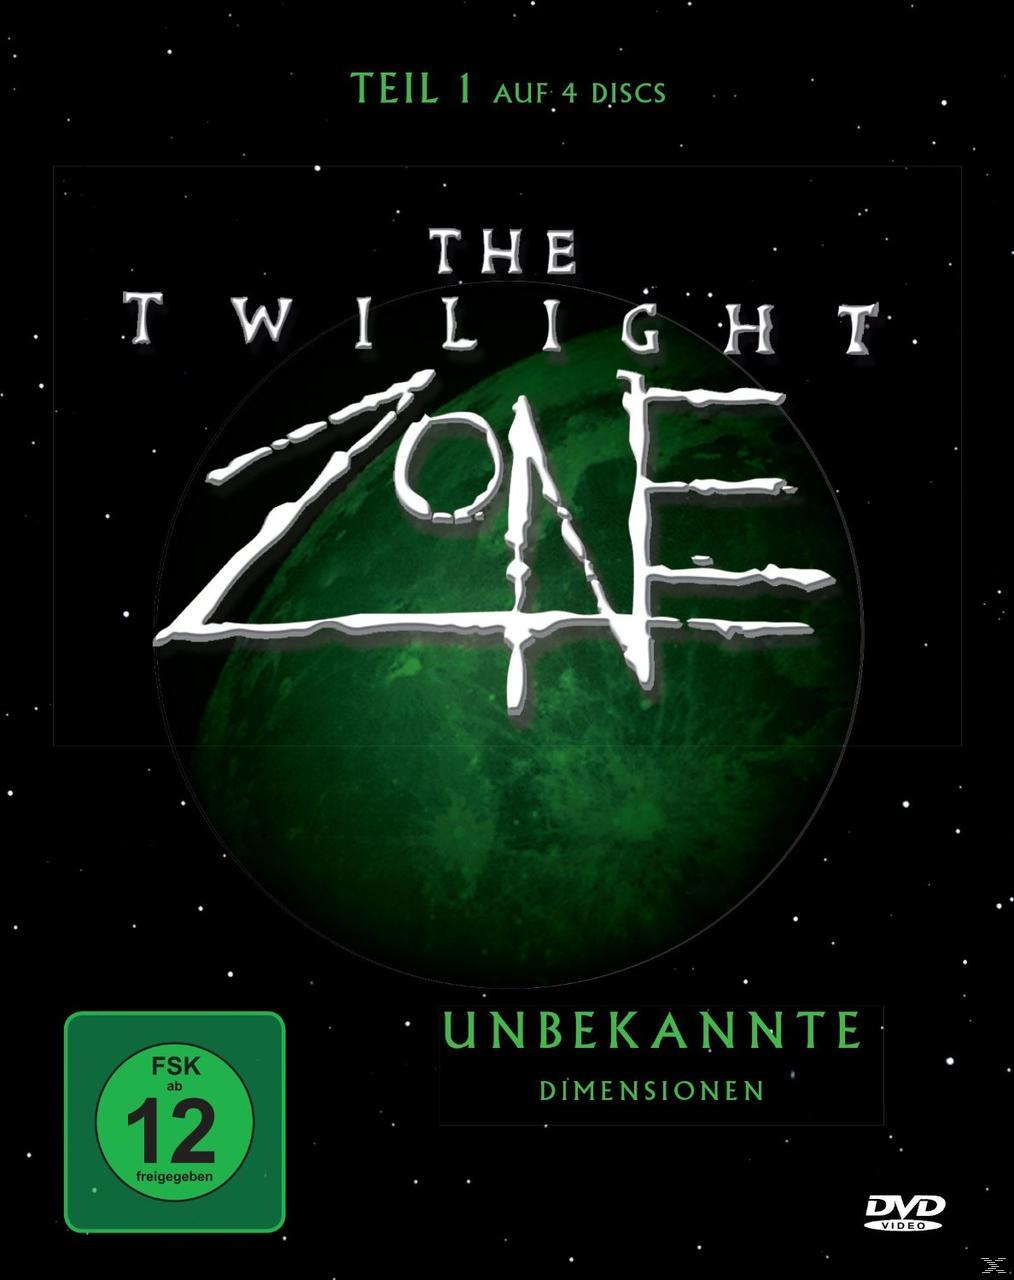 The Unbekannte Twilight Zone DVD Dimensionen - 1